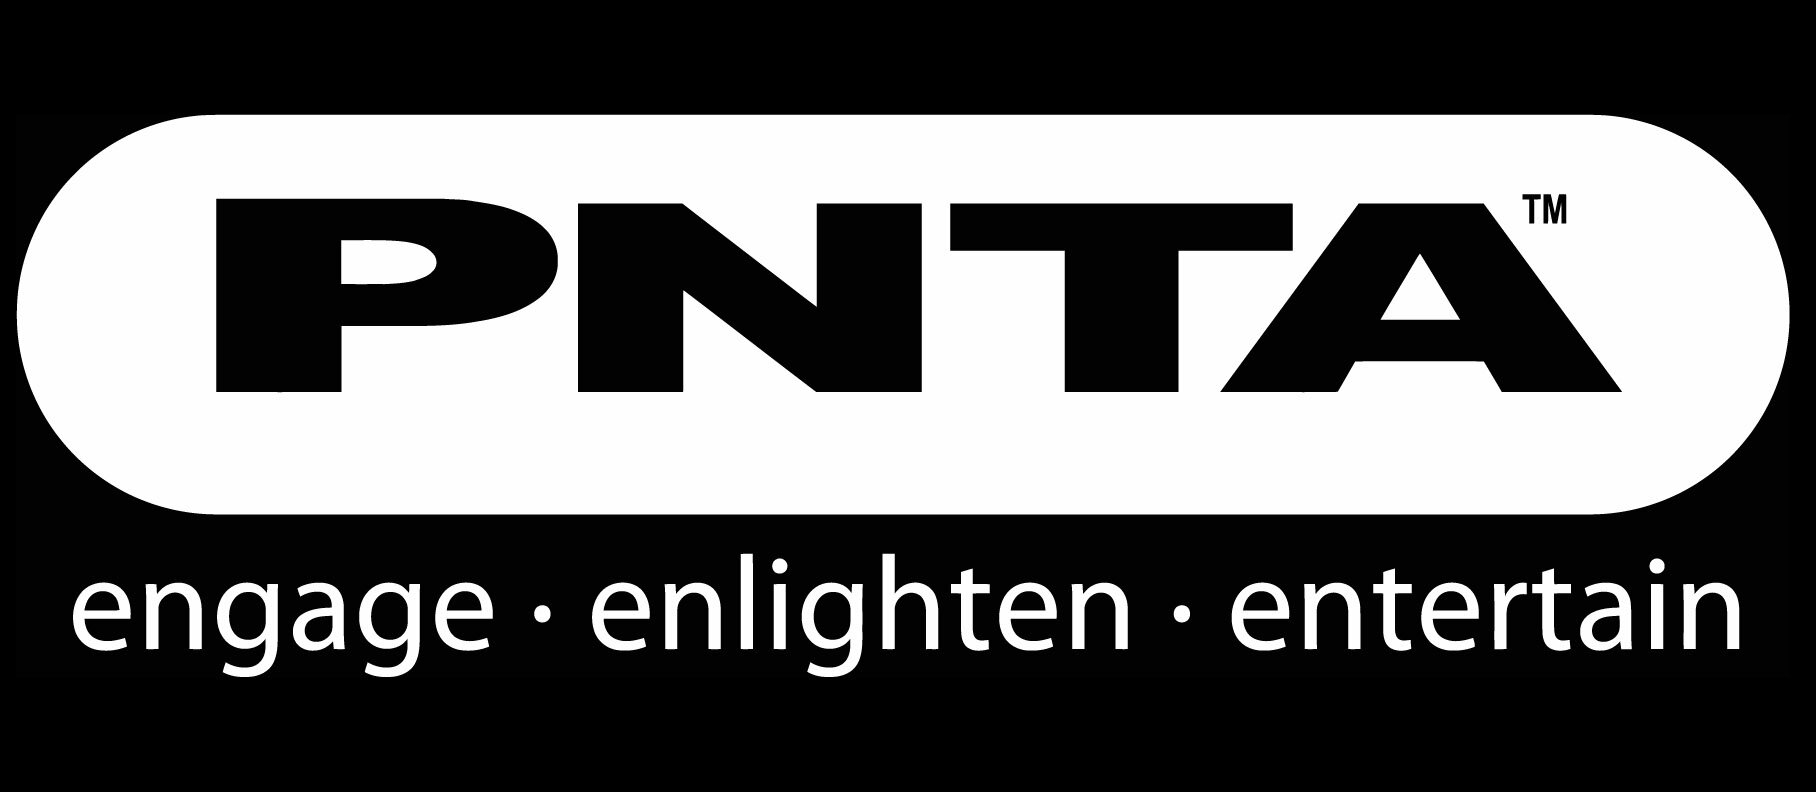 PNTA_Logo_hi_res Invert.jpg